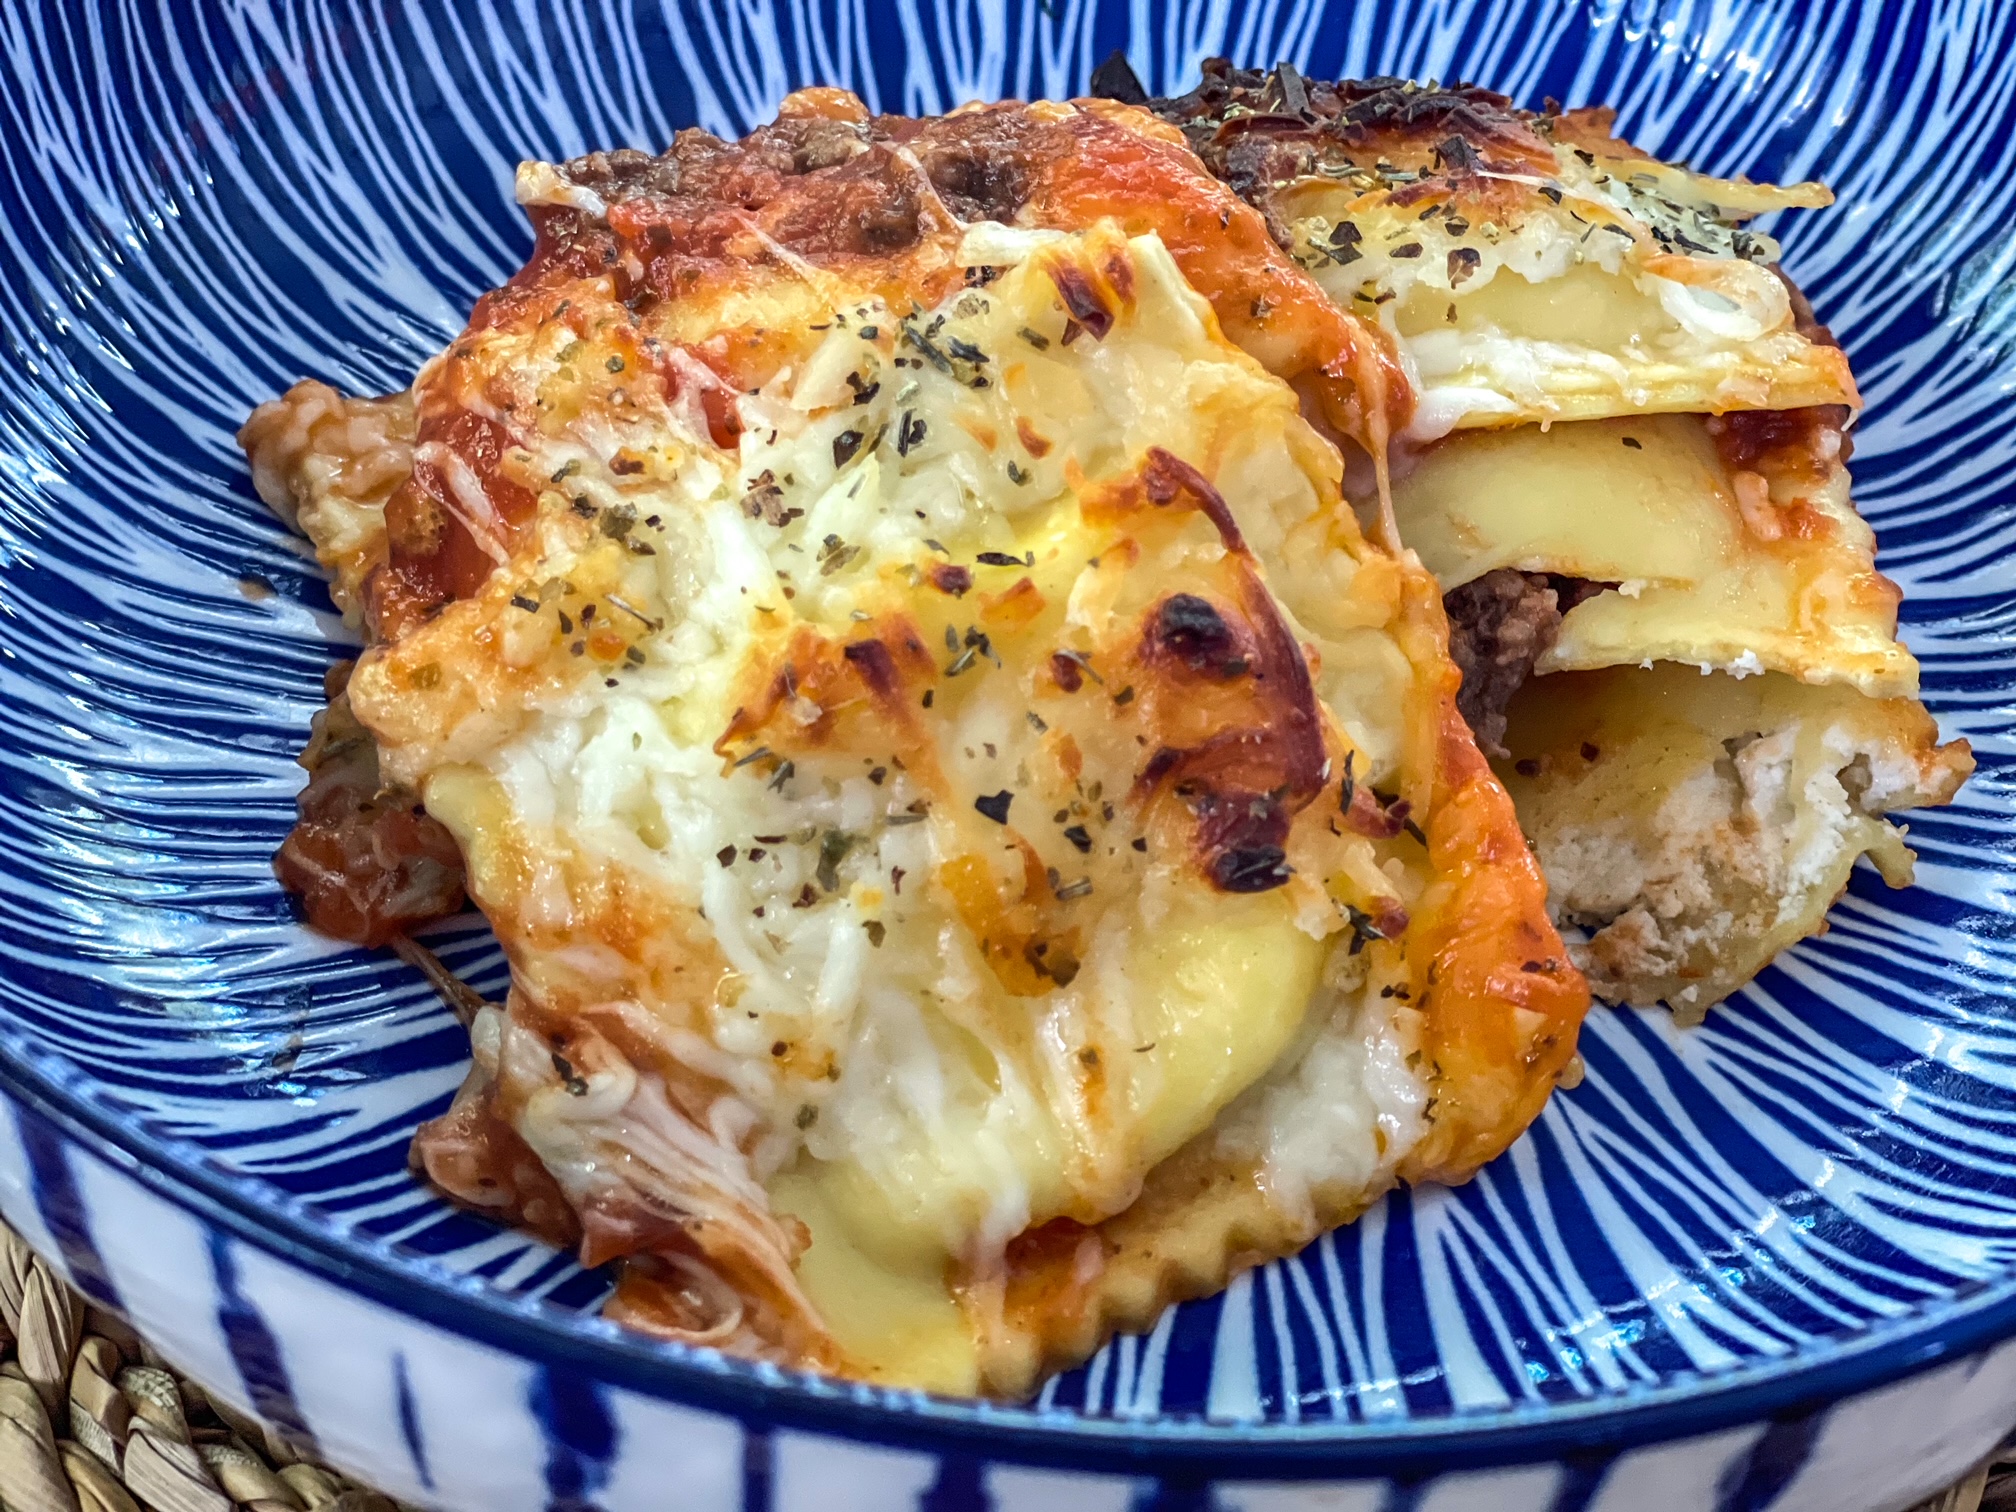 Cheesy ravioli lasagna bake in a bowl. 